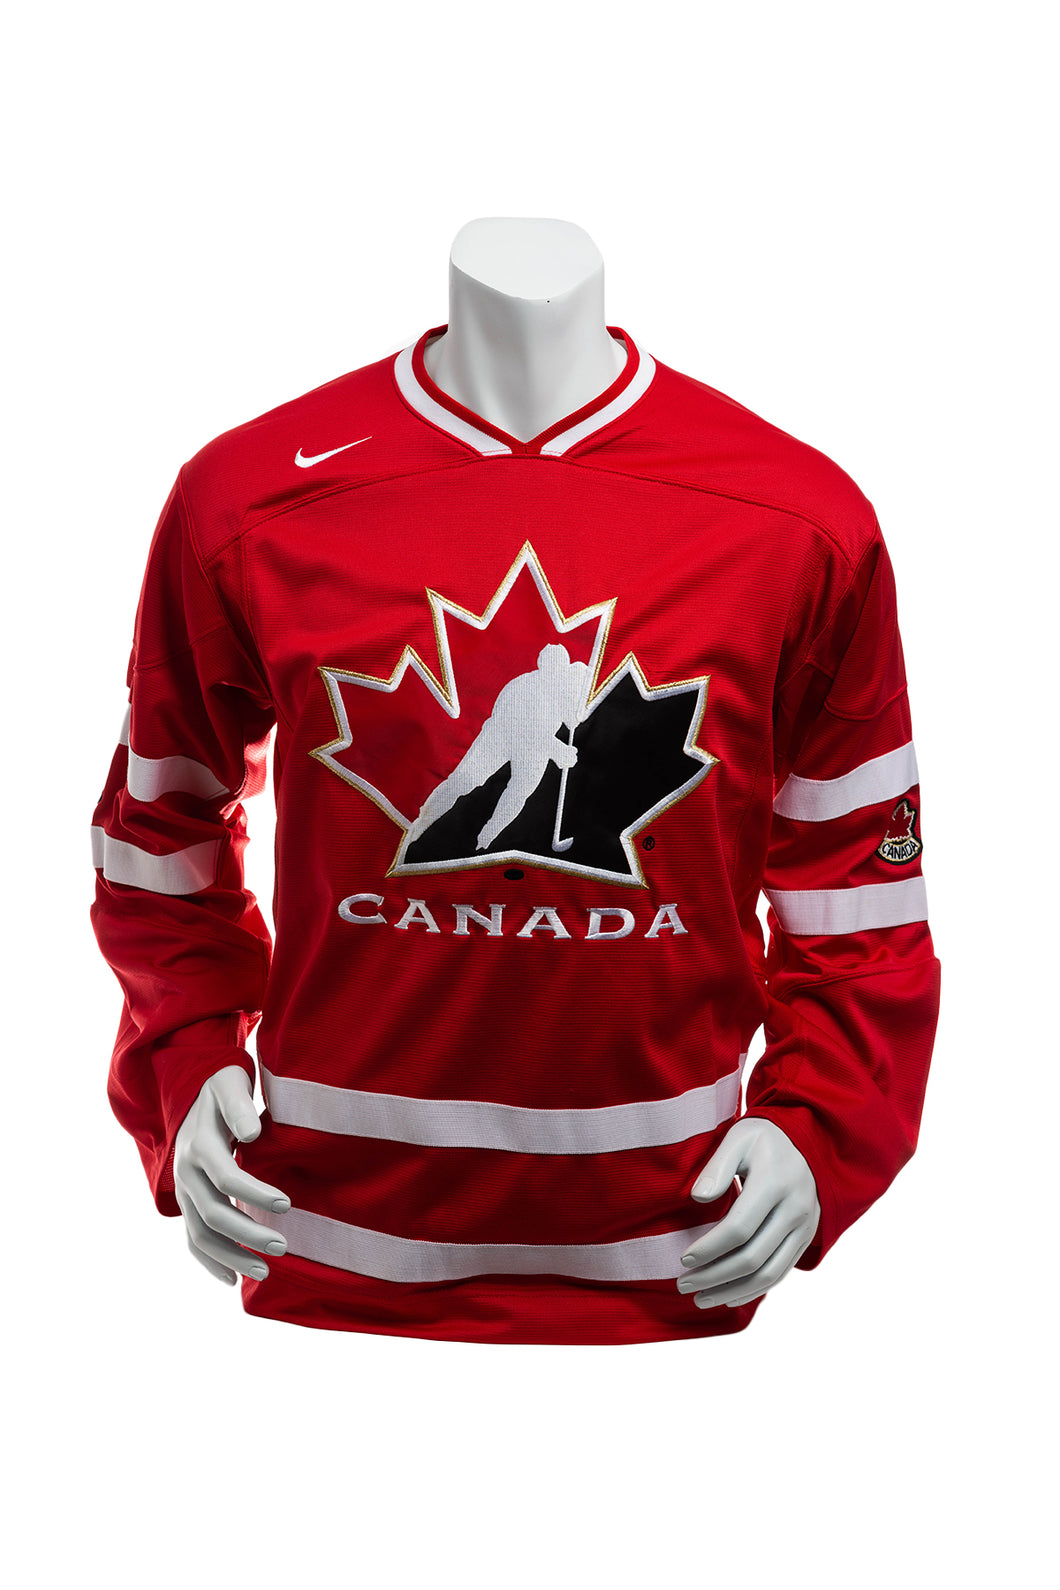 Nike 2010 Team Canada Winter Olympics Championship Hockey Jersey Men's Small